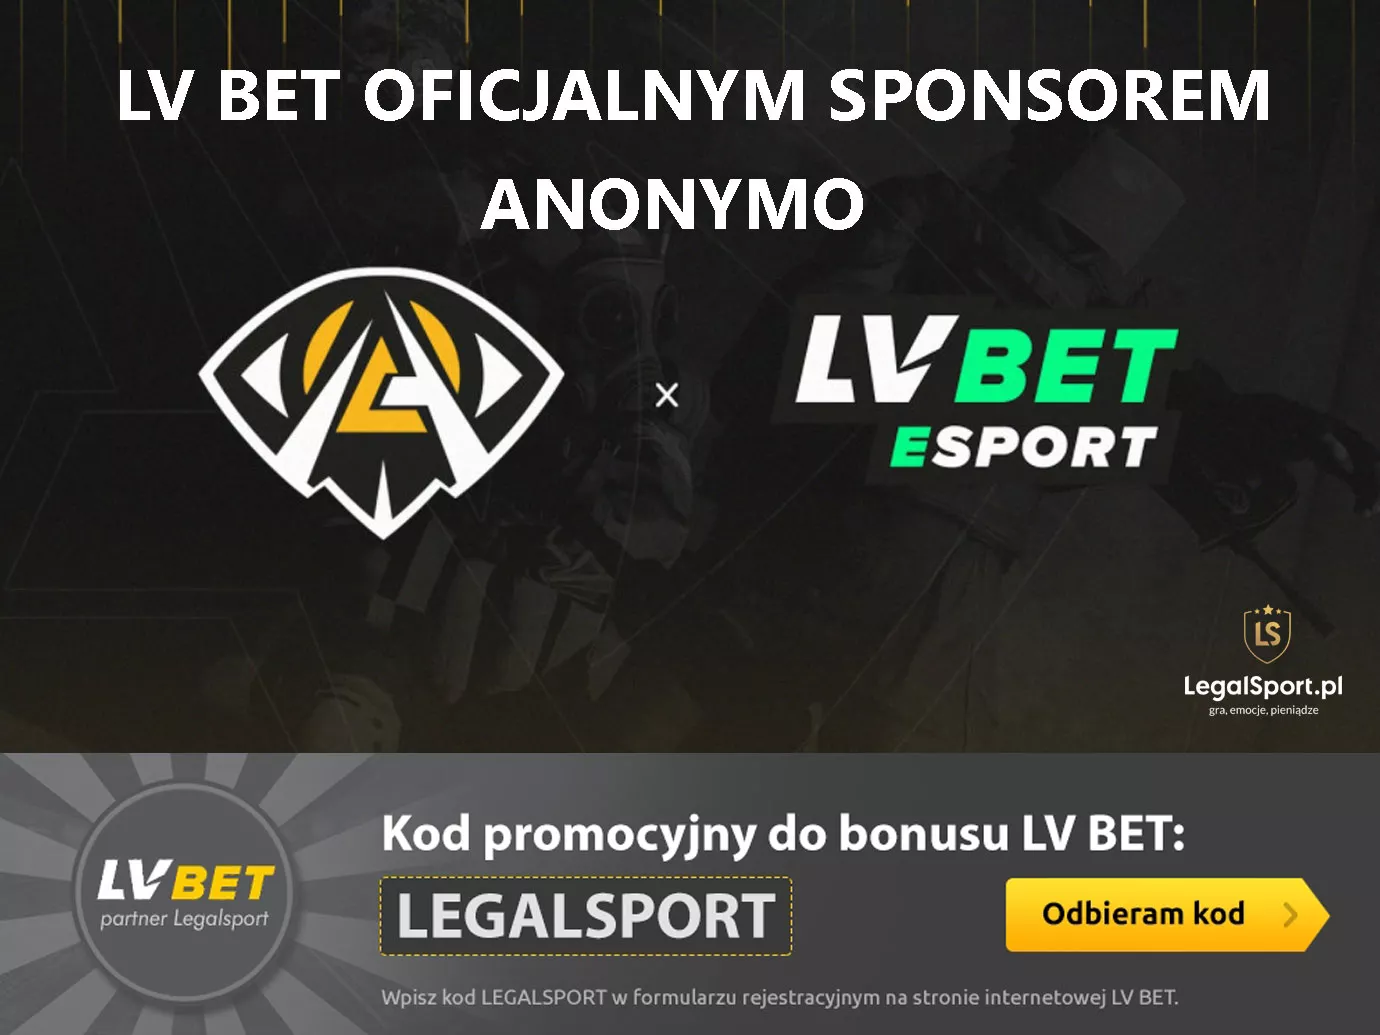 LVBET oficjalnym sponsorem organizacji esportowej ANONYMO